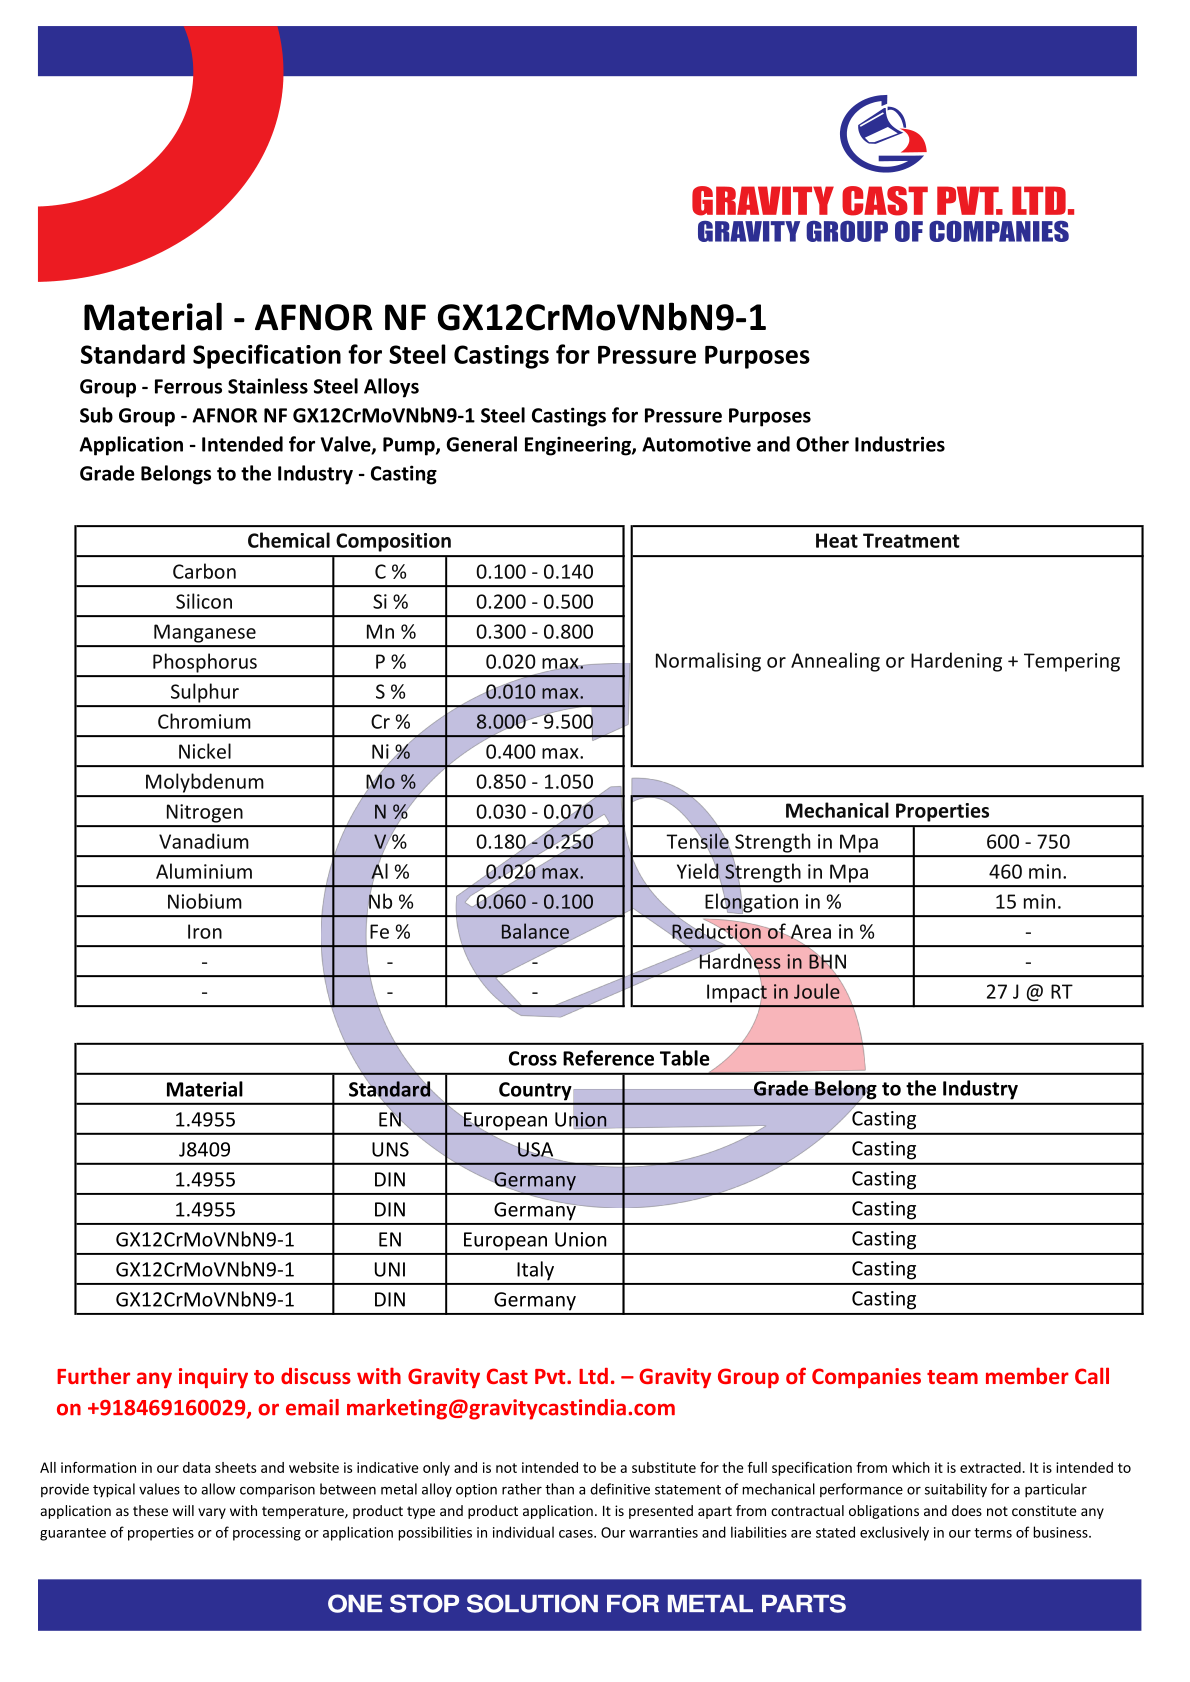 AFNOR NF GX12CrMoVNbN9-1.pdf